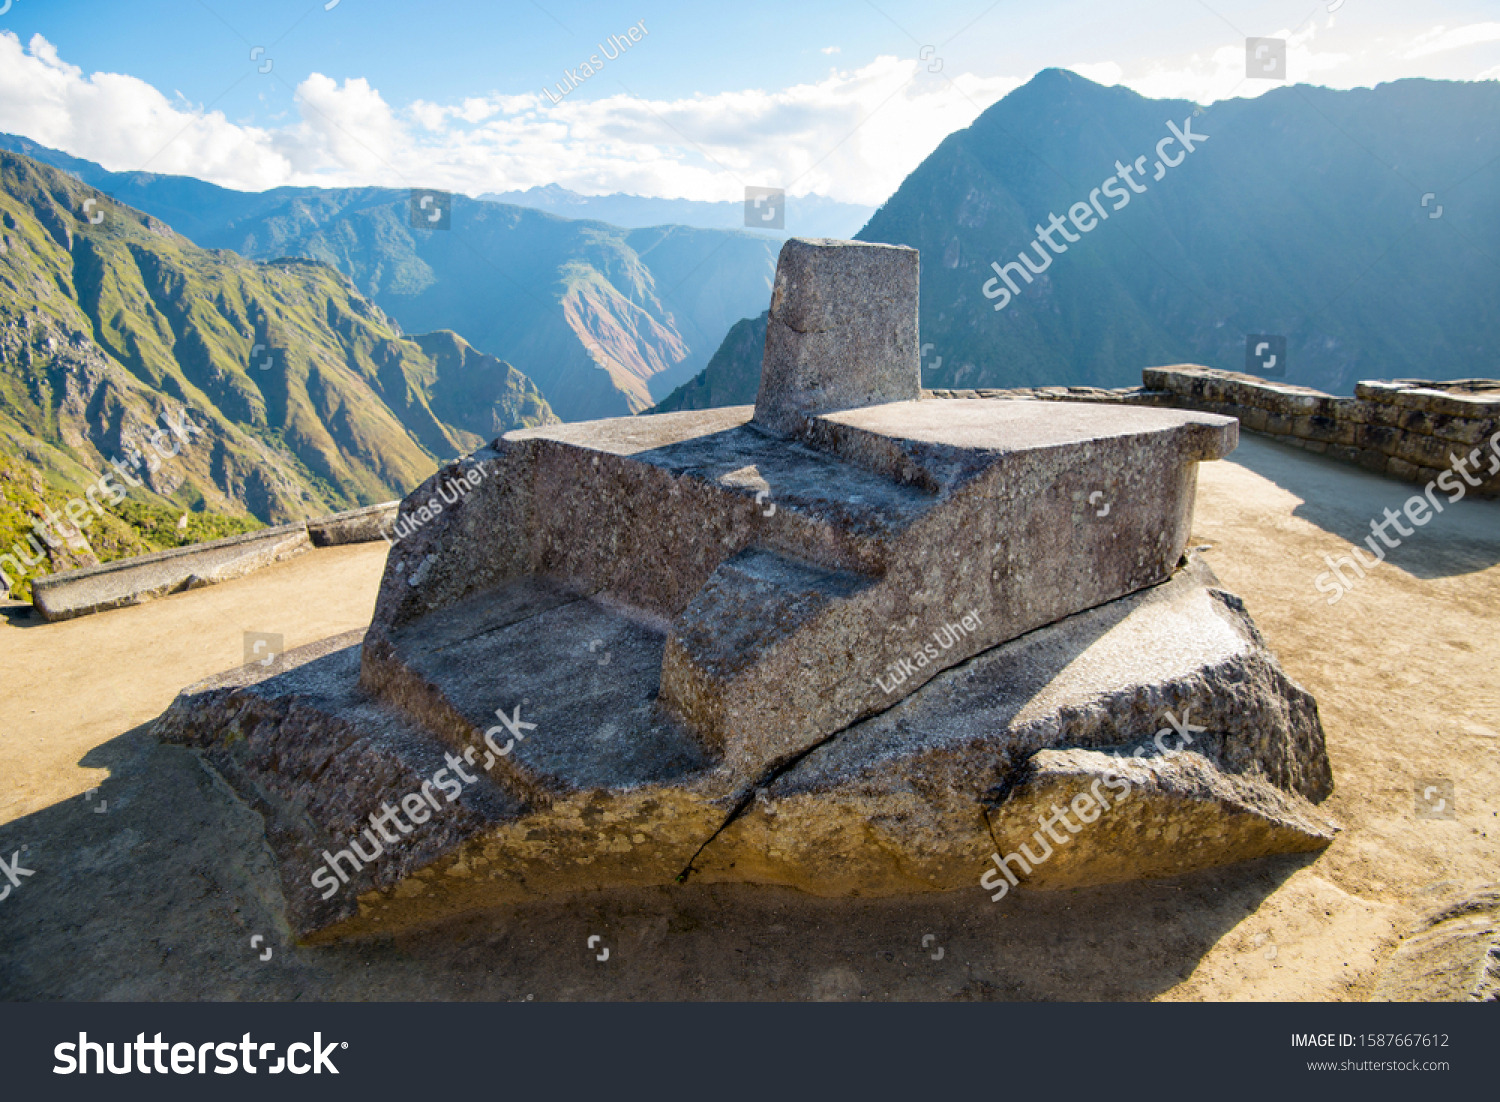 Intihuatana, sacred sun dial in Inca ruins Machu Picchu, Peru, South America #1587667612